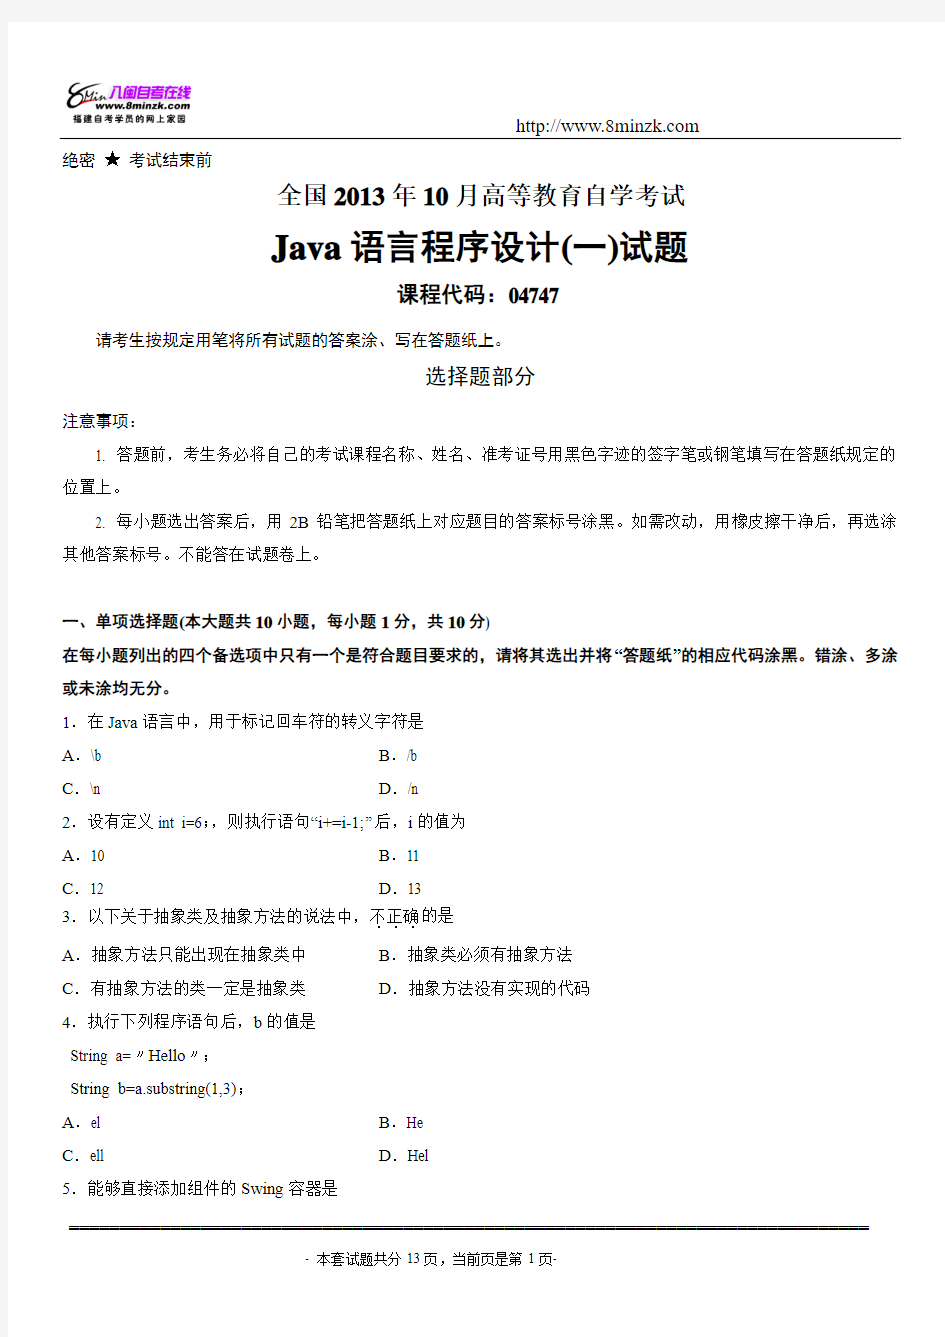 2013年10月_Java语言程序设计(一)自考试卷及答案解析